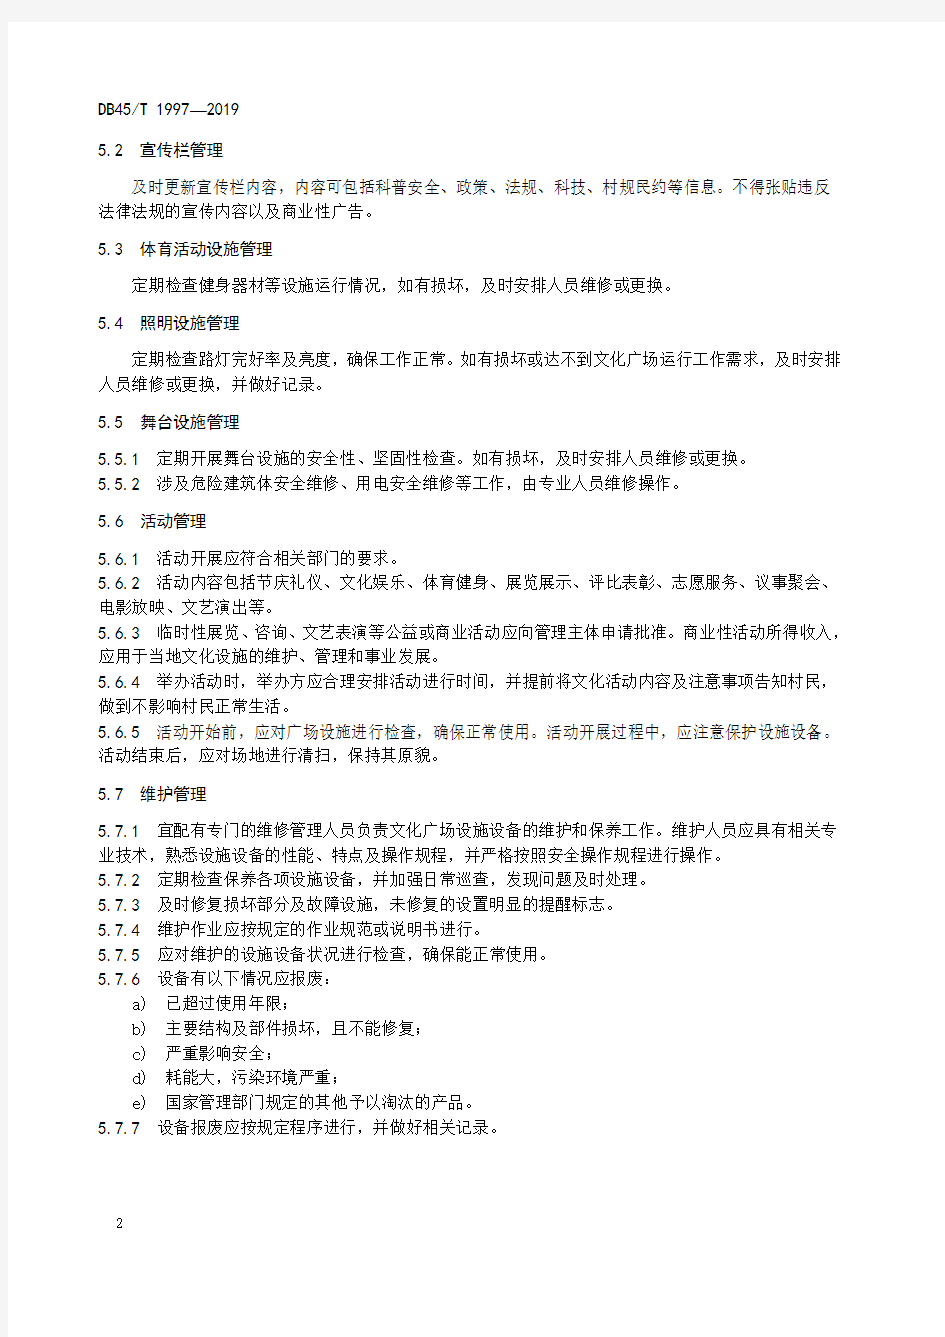 乡村文化广场管理规范广西壮族自治区地方标准2019版